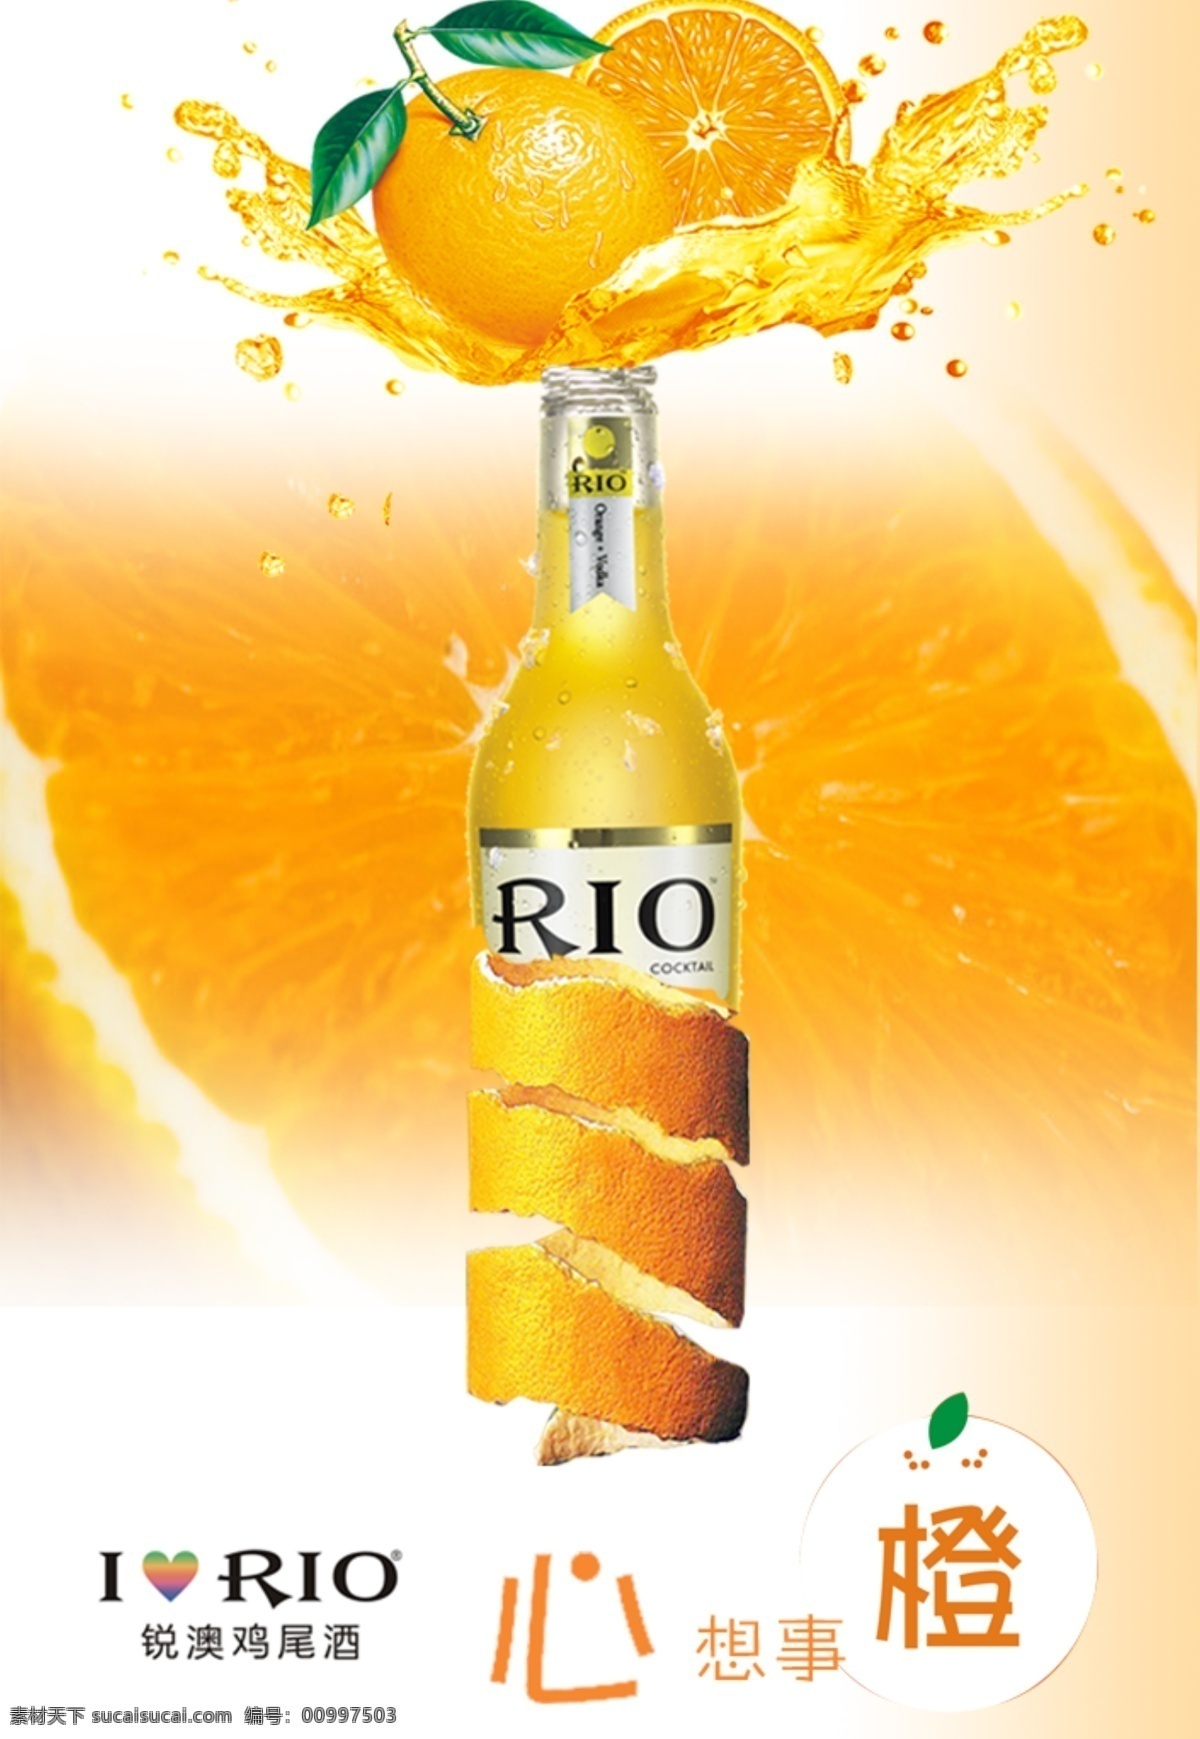 rio鸡尾酒 rio 鸡尾酒 创意海报 锐澳 橙汁 橘子皮 酒类海报 灯箱 精美海报类